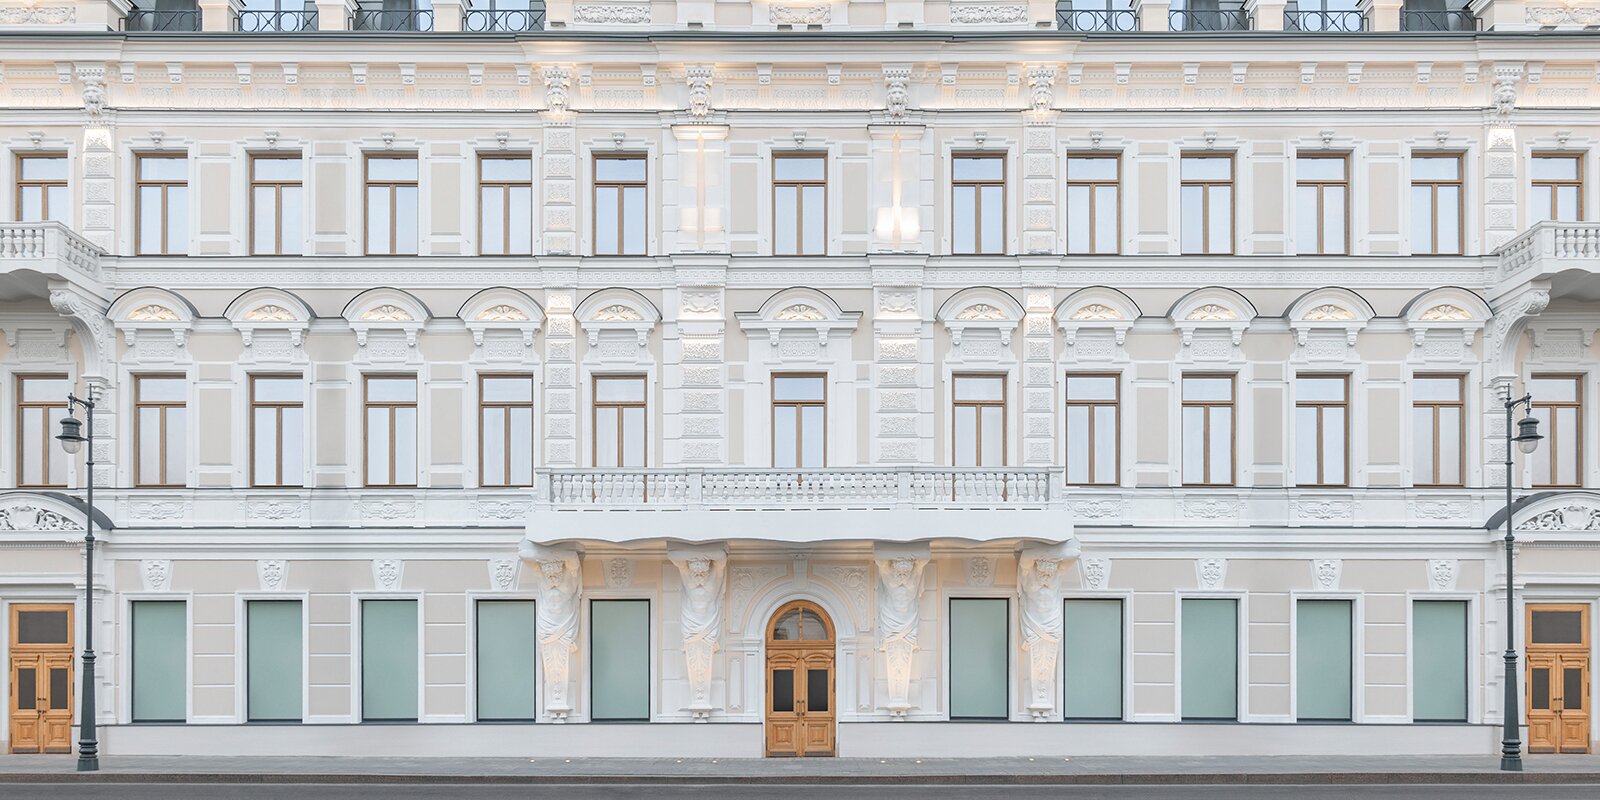 Специалисты городских служб сохранили все уникальные архитектурные элементы. Фото: сайт мэра Москвы